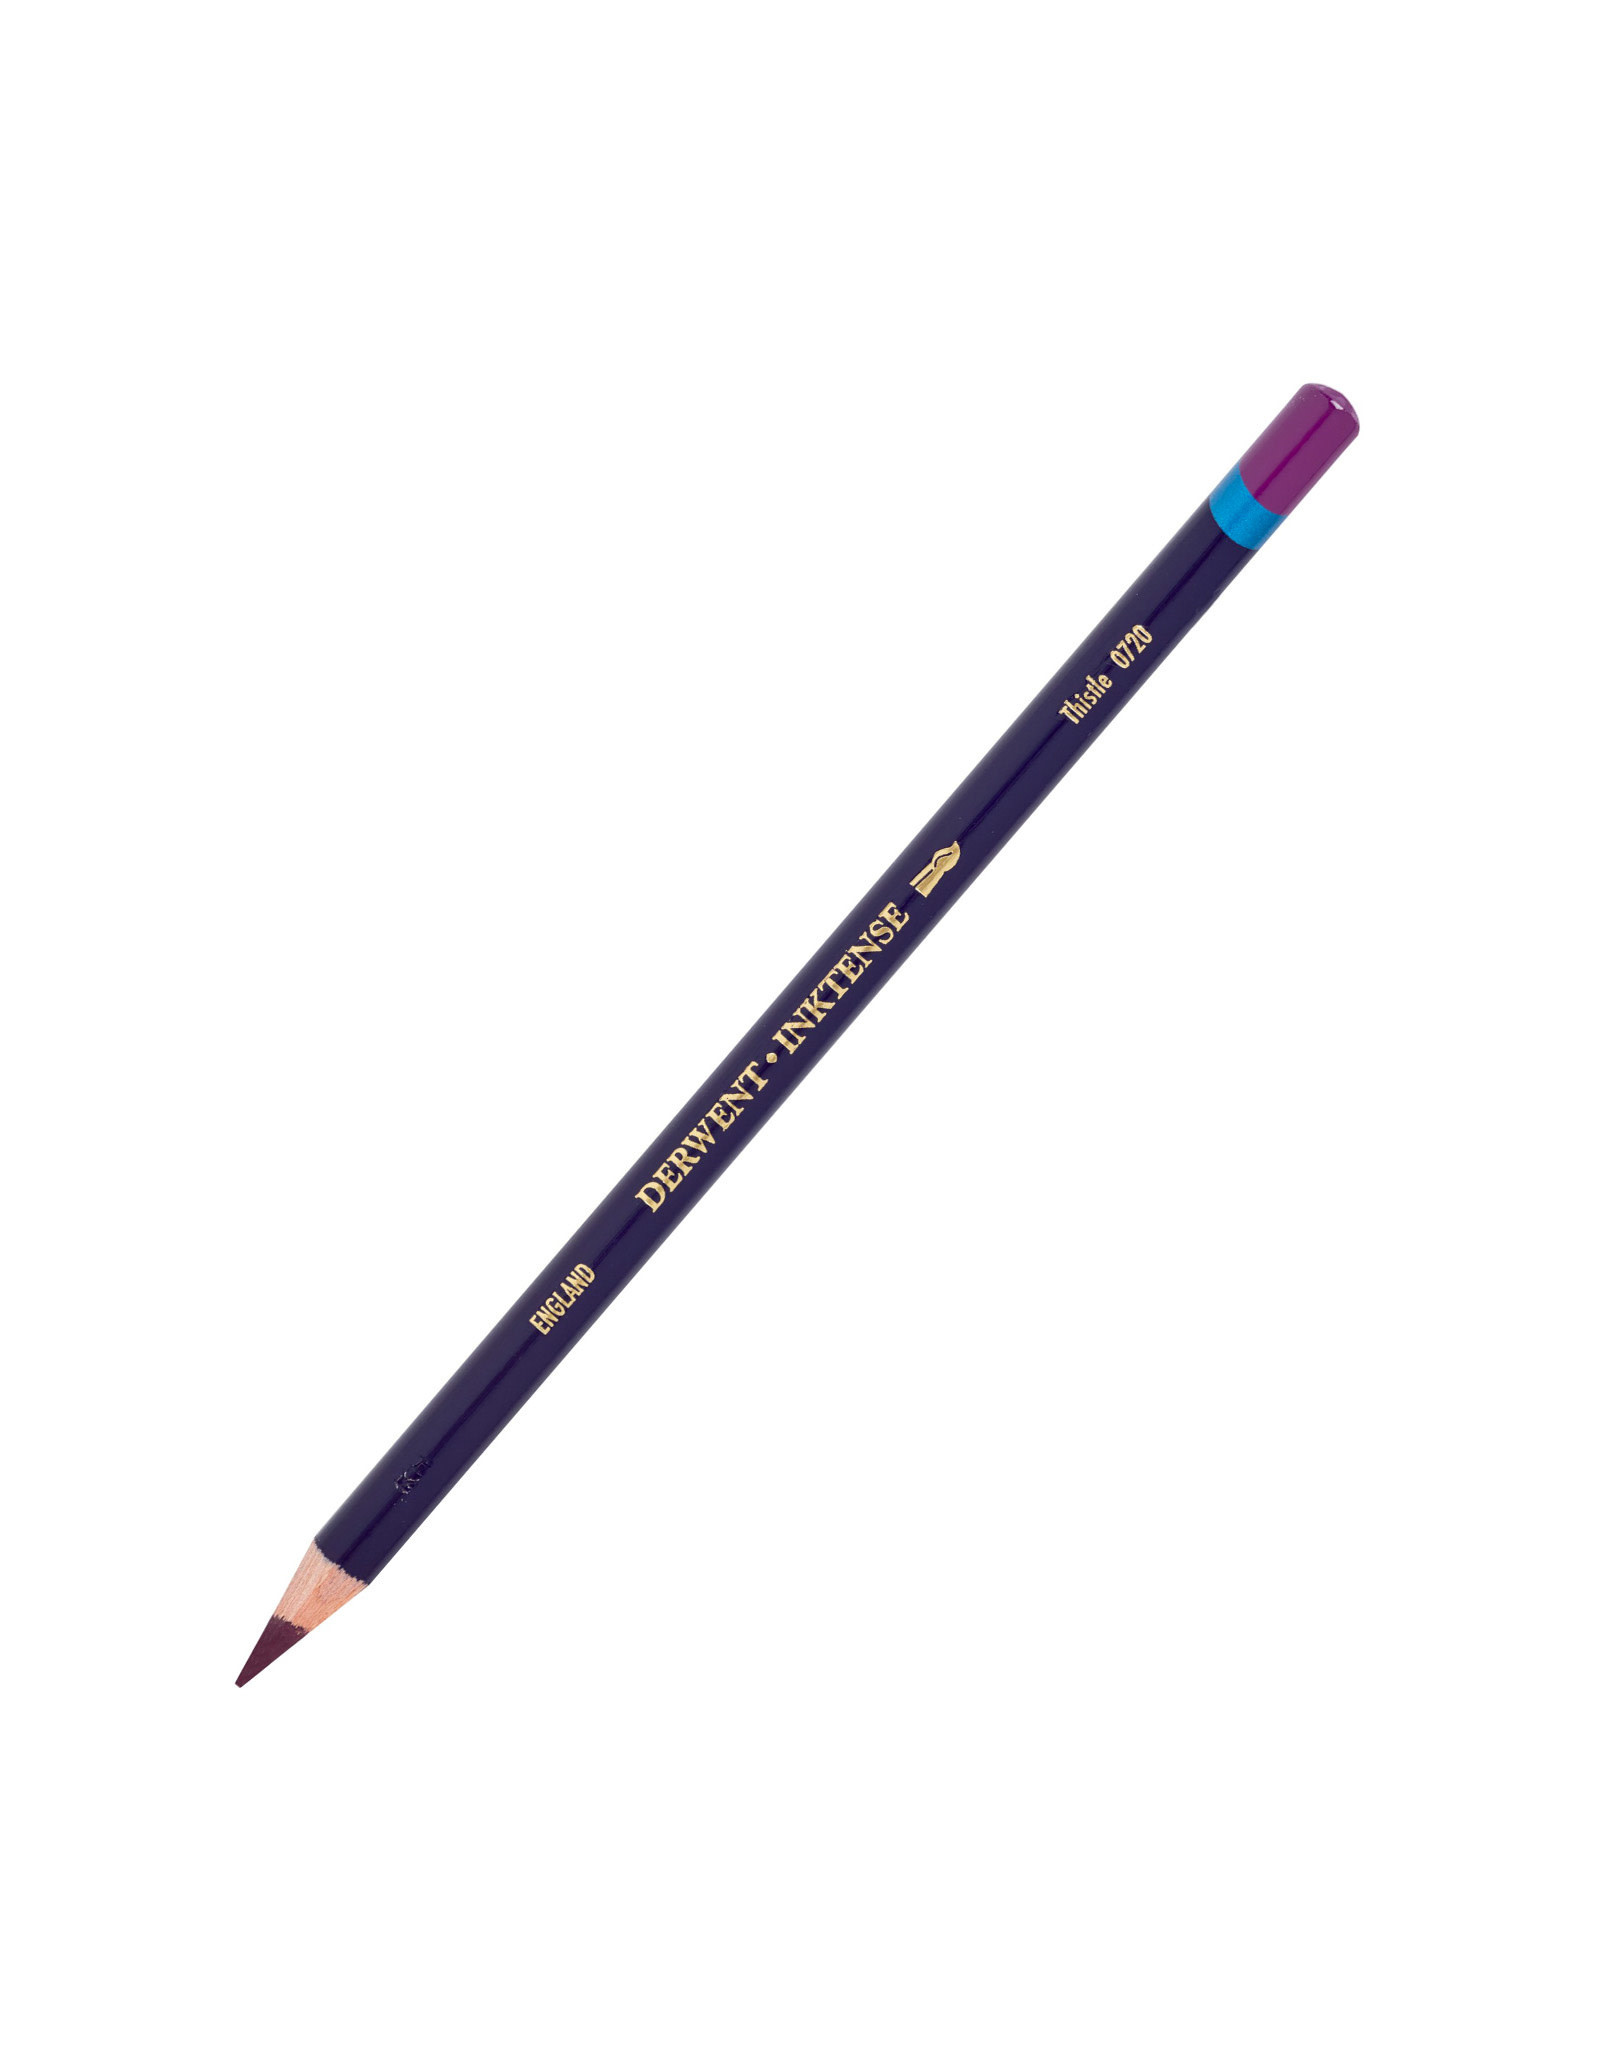 Derwent Derwent Inktense Pencil, Thistle